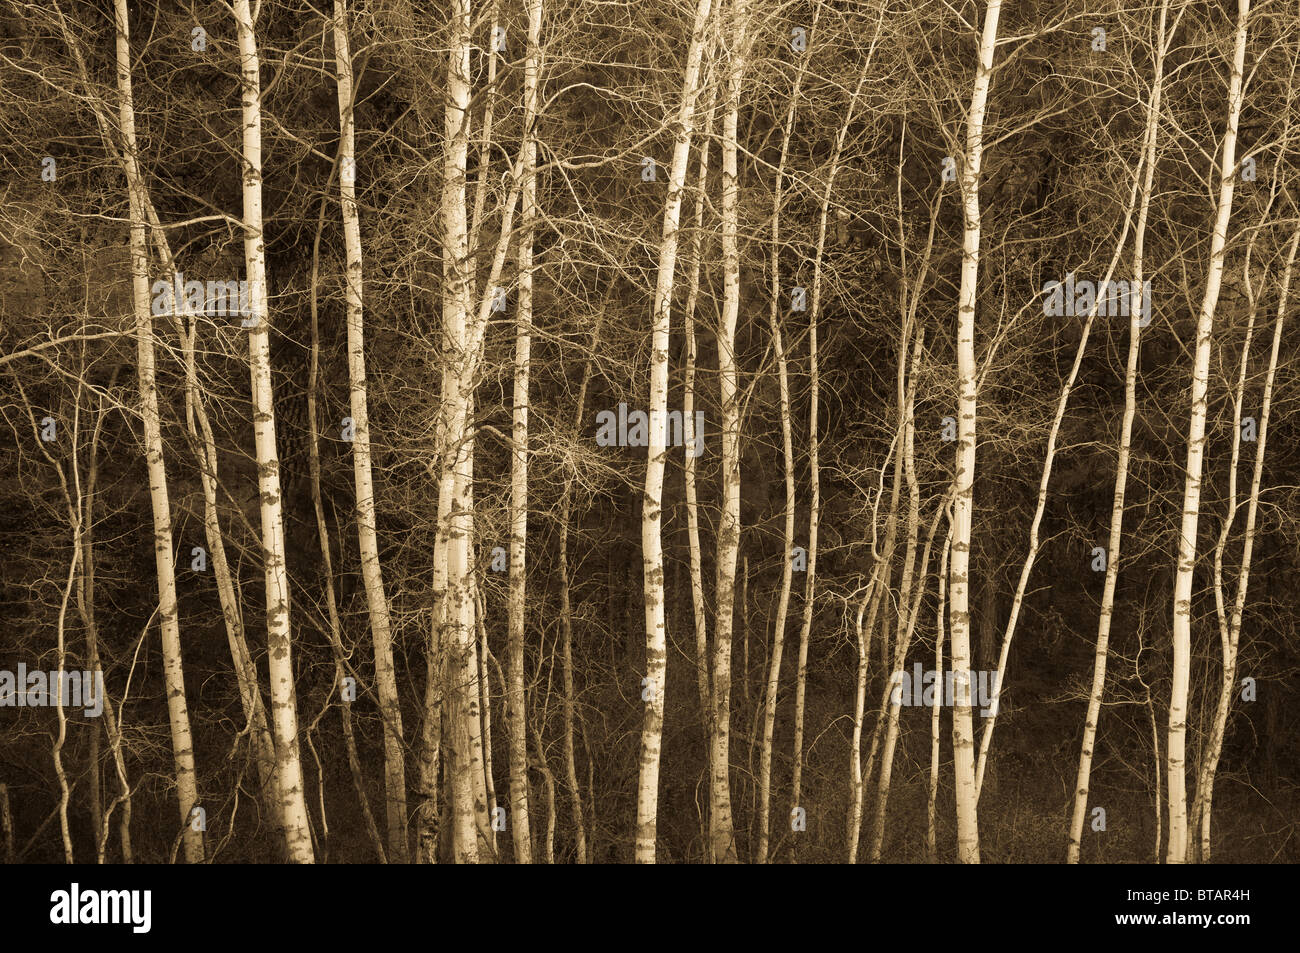 Aspen trees; Turnbull National Wildlife Refuge, eastern Washington. Stock Photo